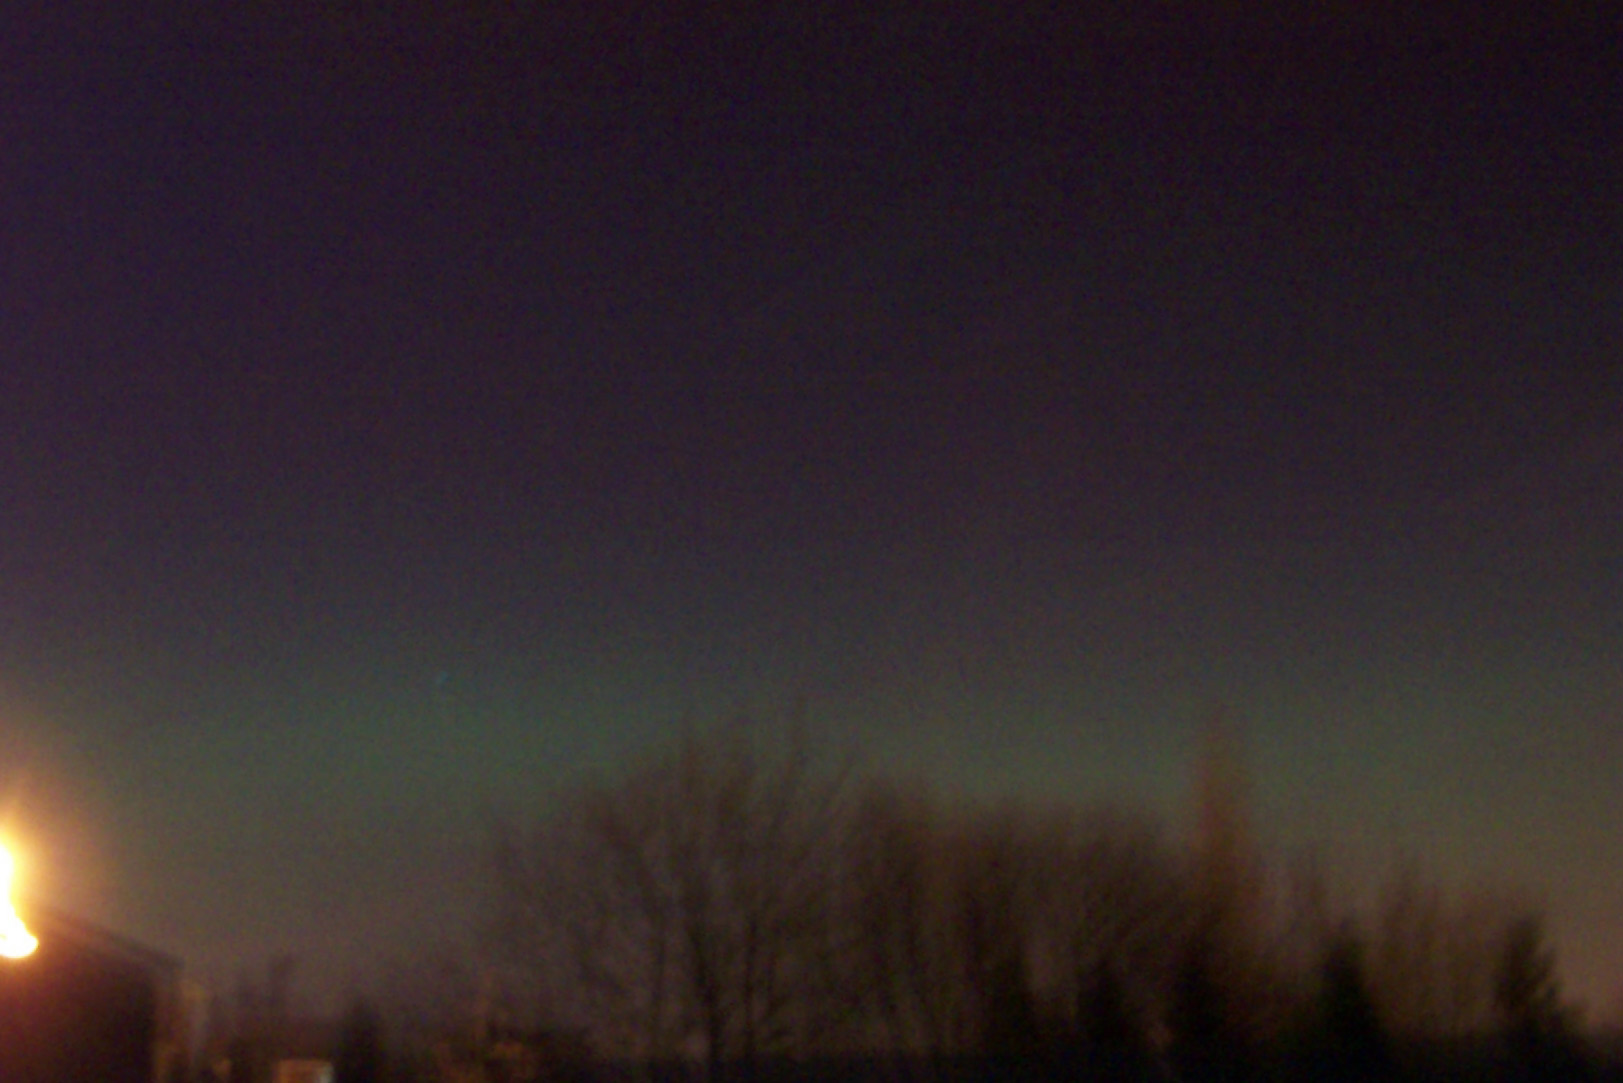 telford aurora borealis 2005